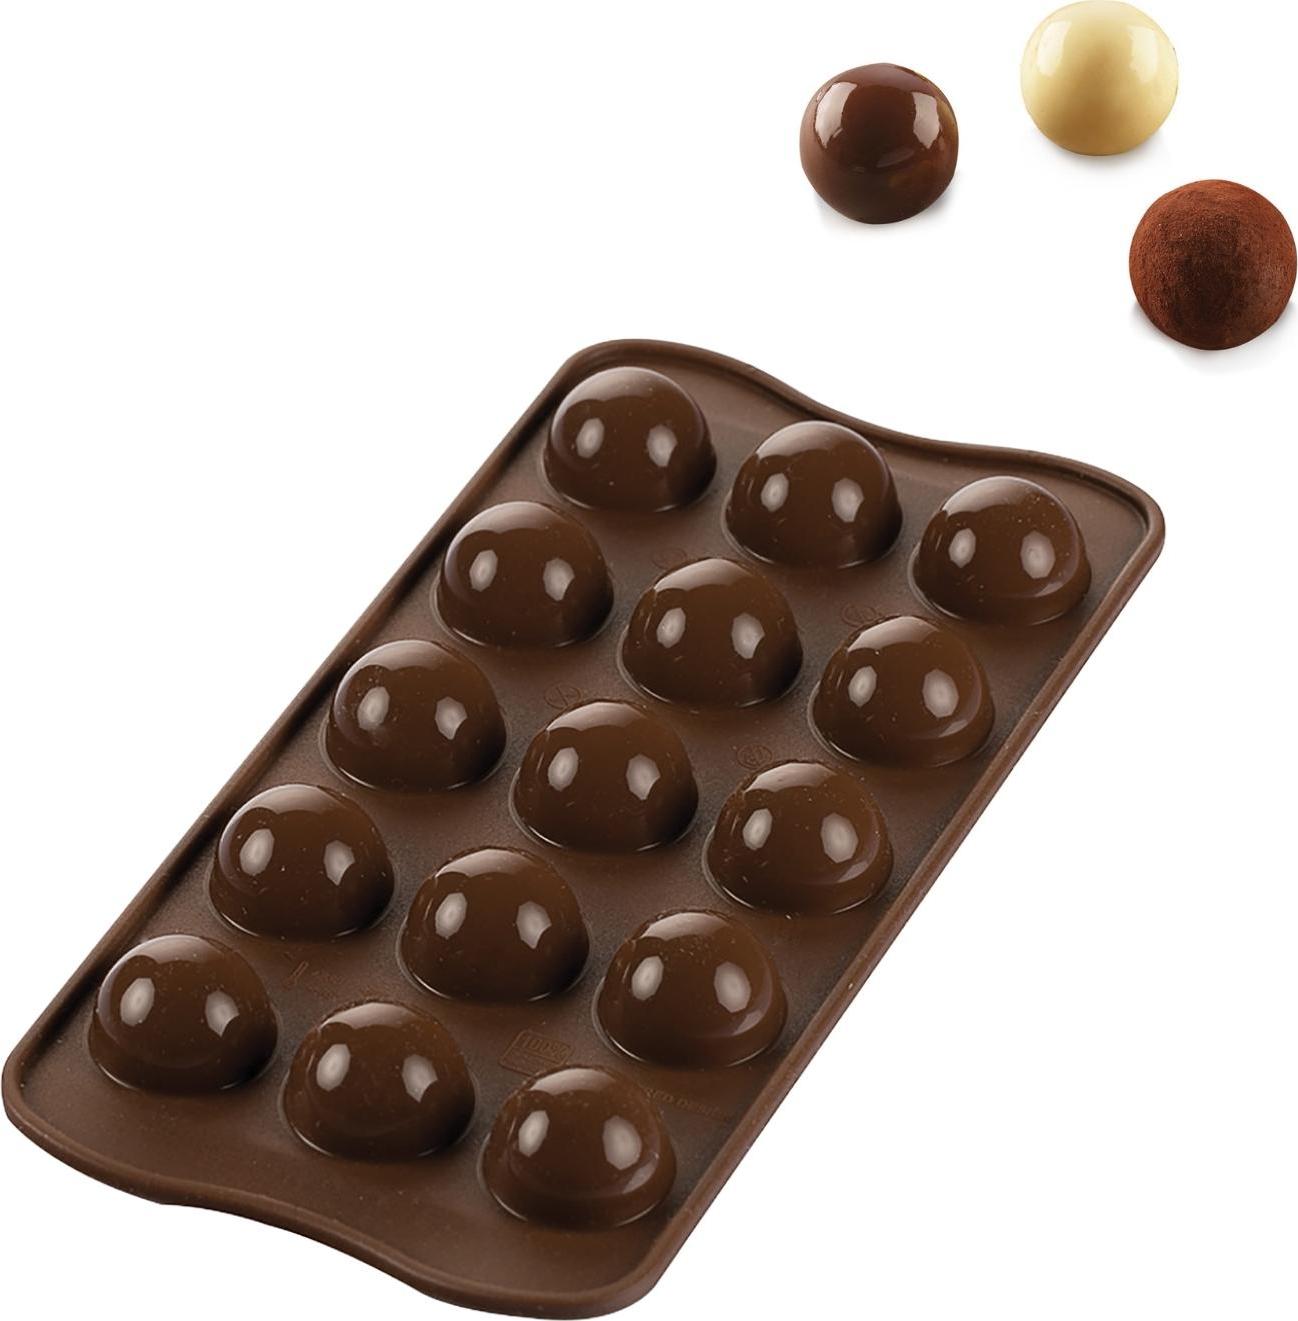 https://3fa-media.com/silikomart/silikomart-scg50-tartufino-chocolate-mould-silicone__126012_29843e9-s2500x2500.jpg